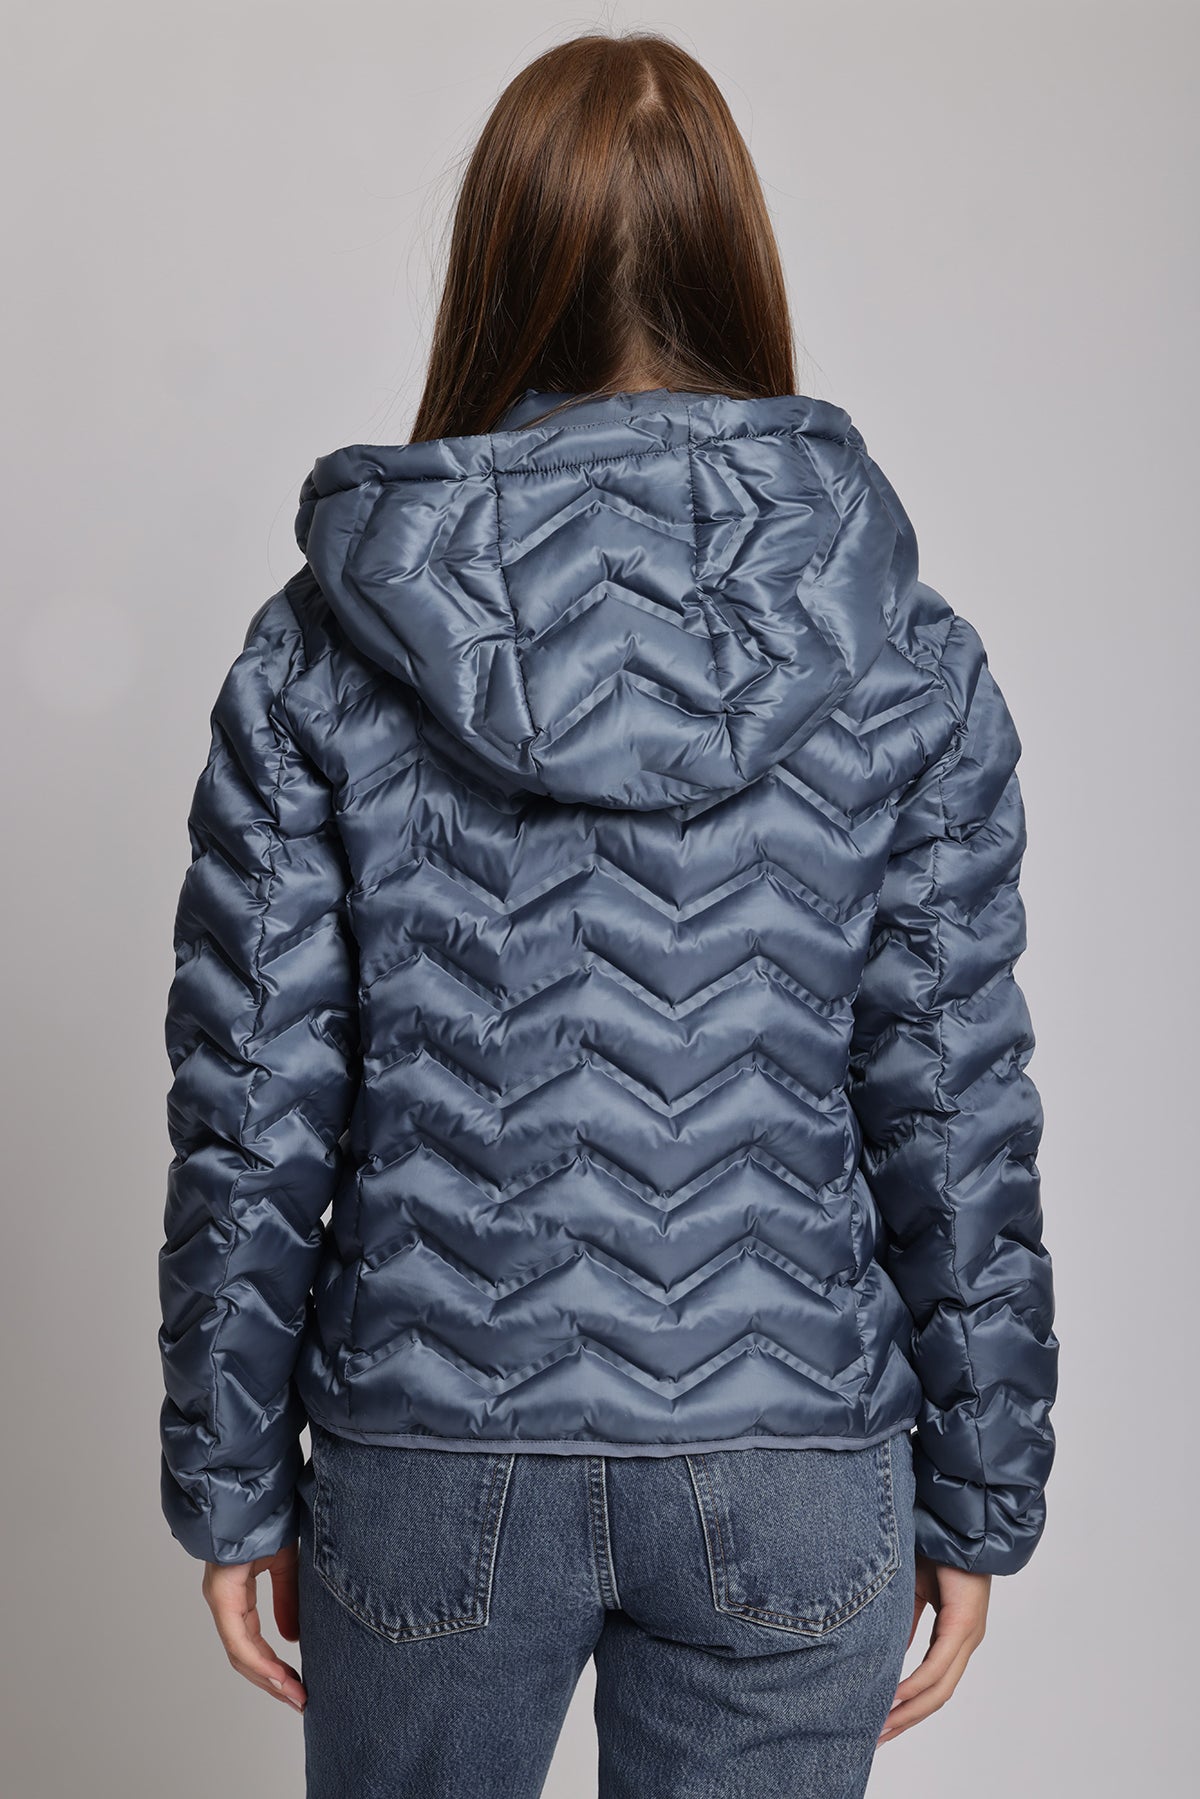 Women's packable puffer jacket in metallic cobalt